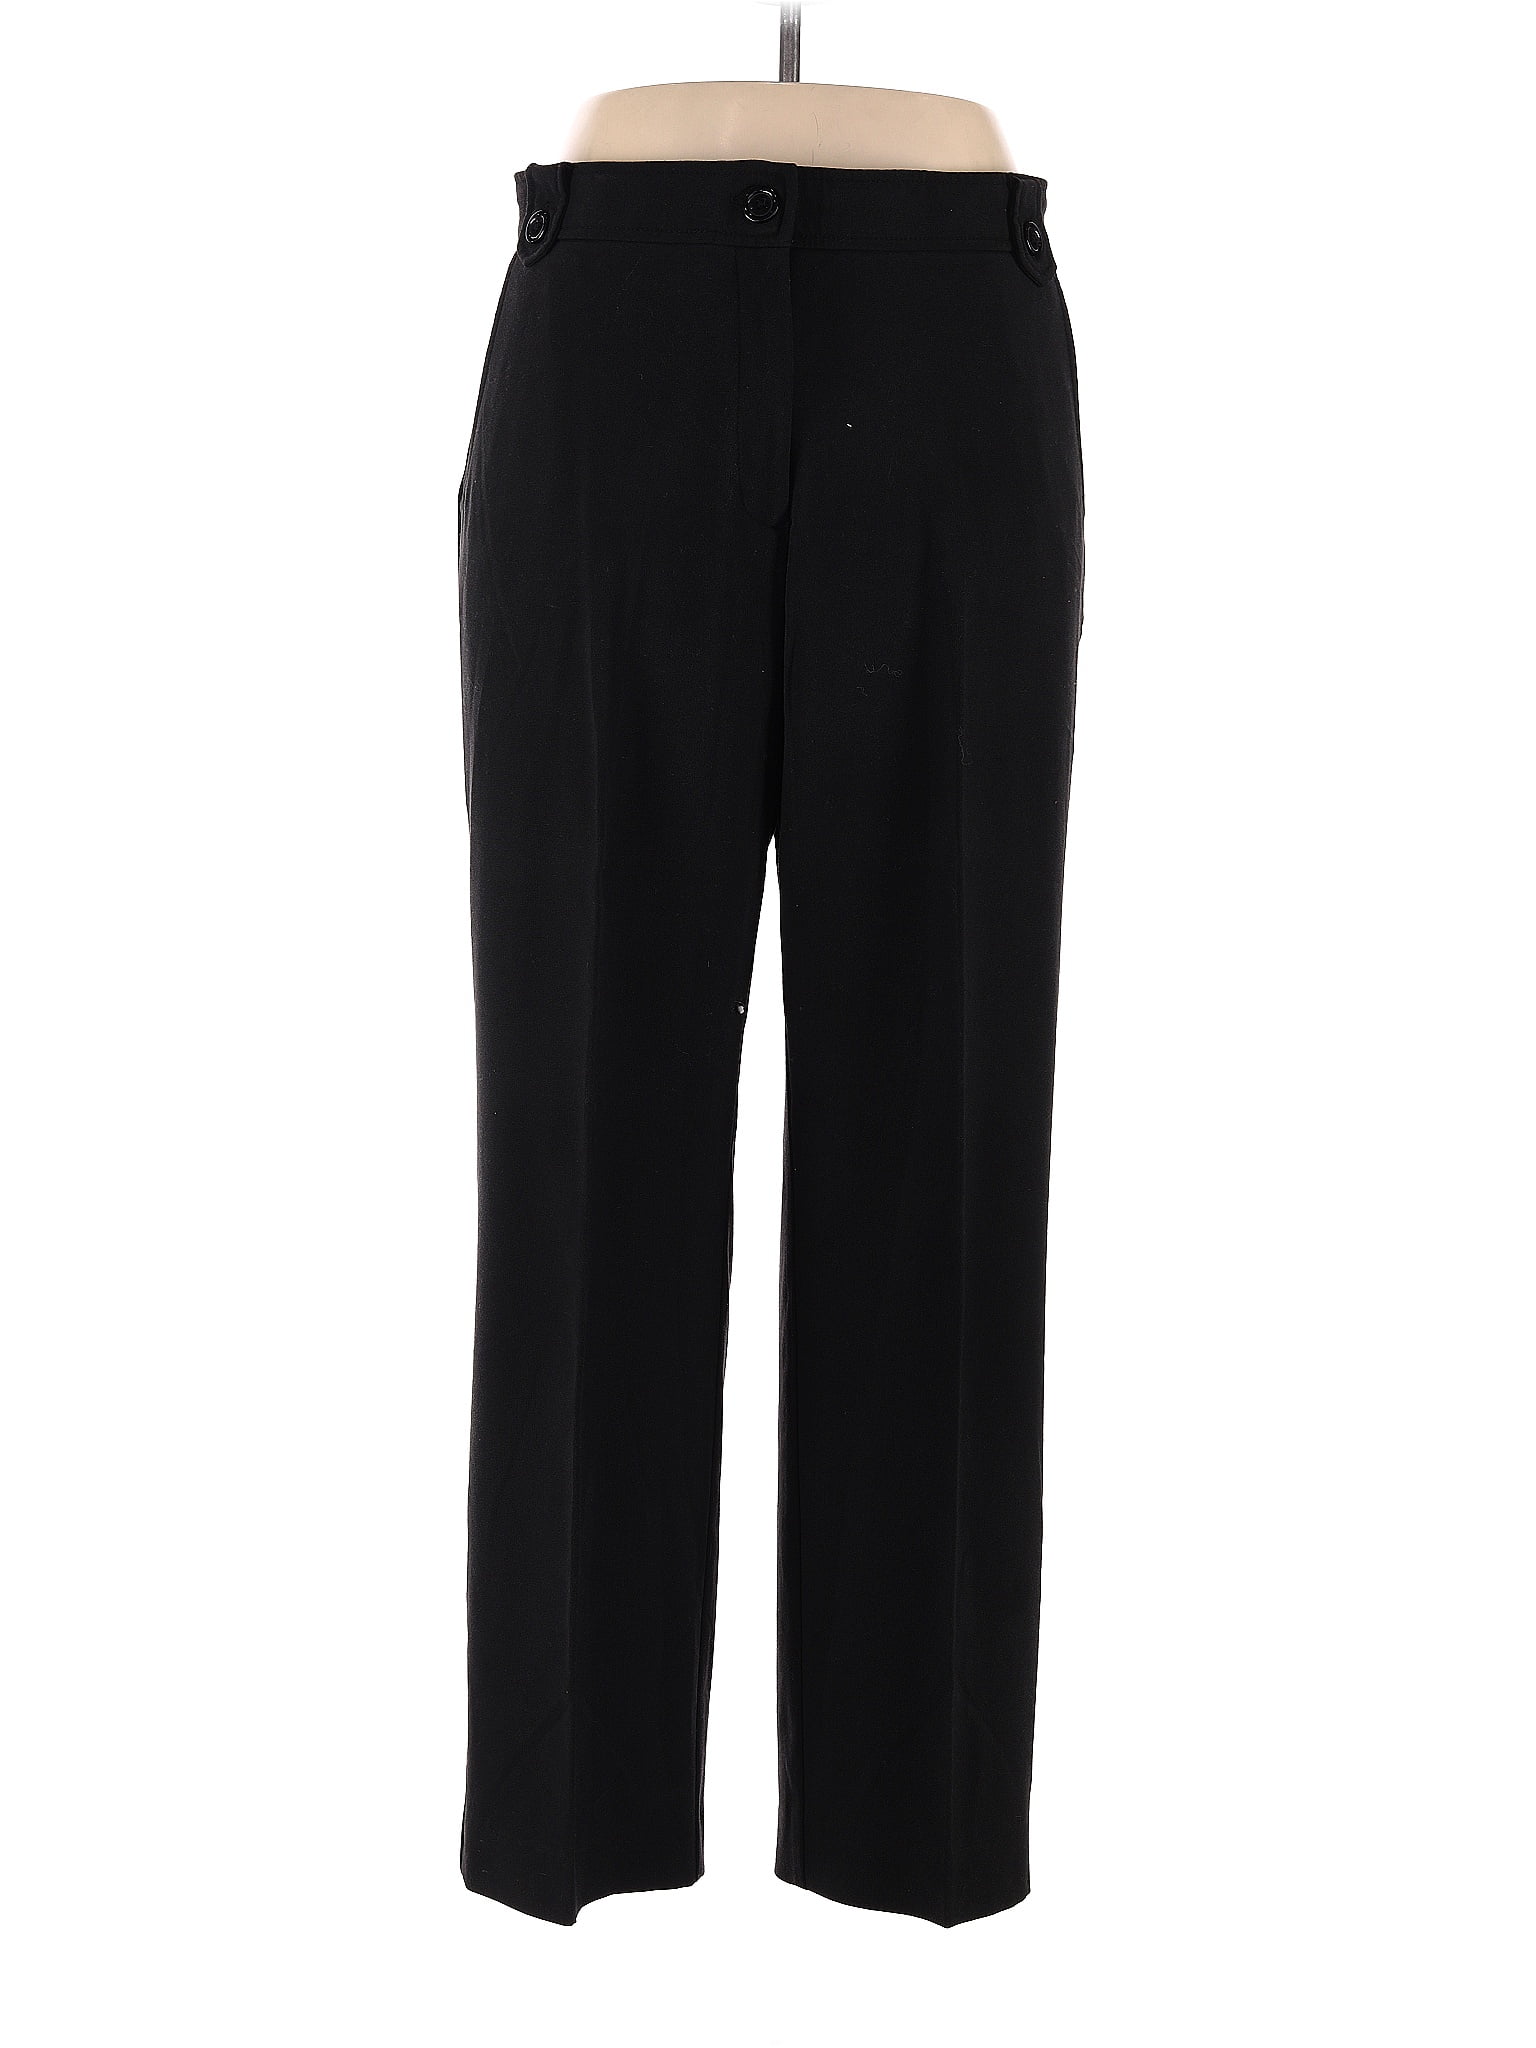 Counterparts Polka Dots Black Dress Pants Size 14 - 58% off | thredUP